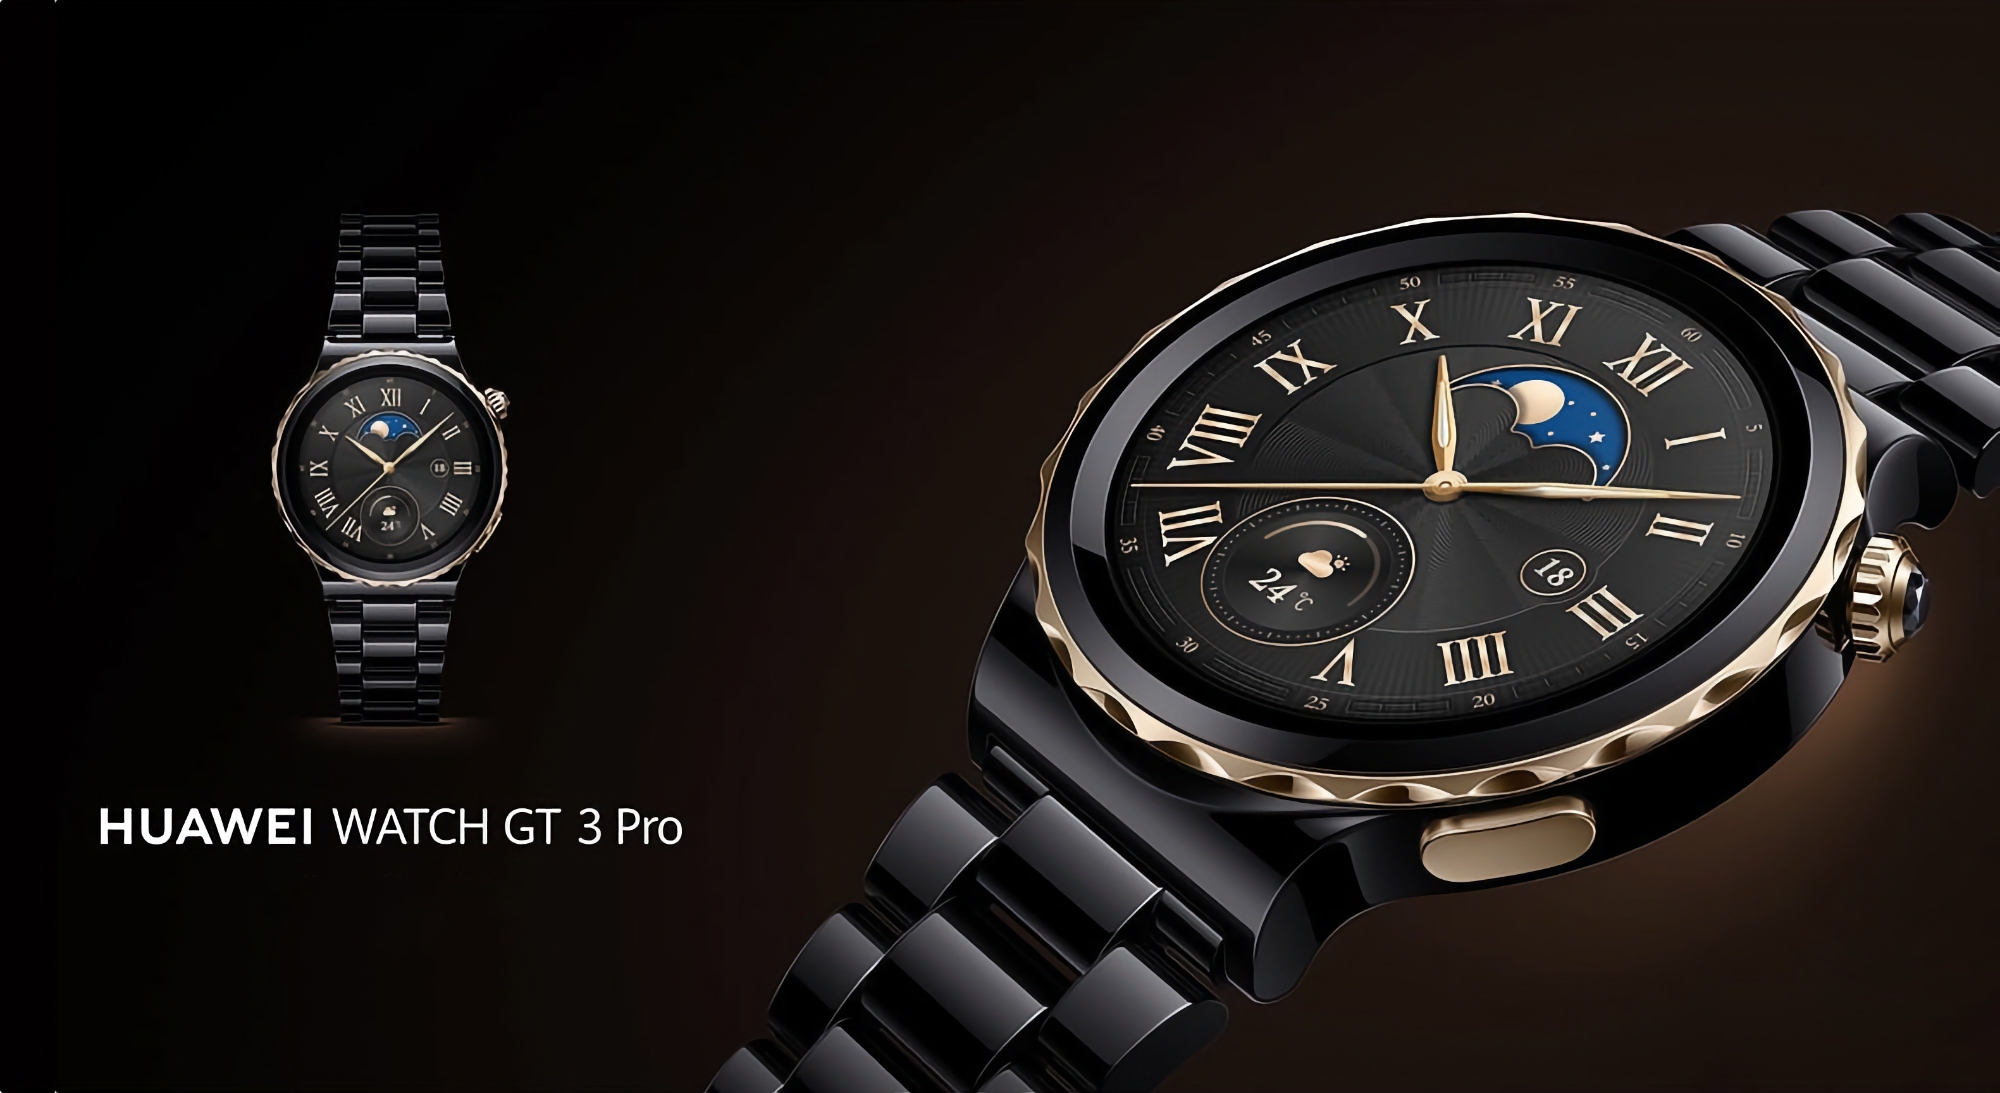 Huawei Watch GT 3 Pro modtog opdatering 3.0.0.101: hvad er nyt?